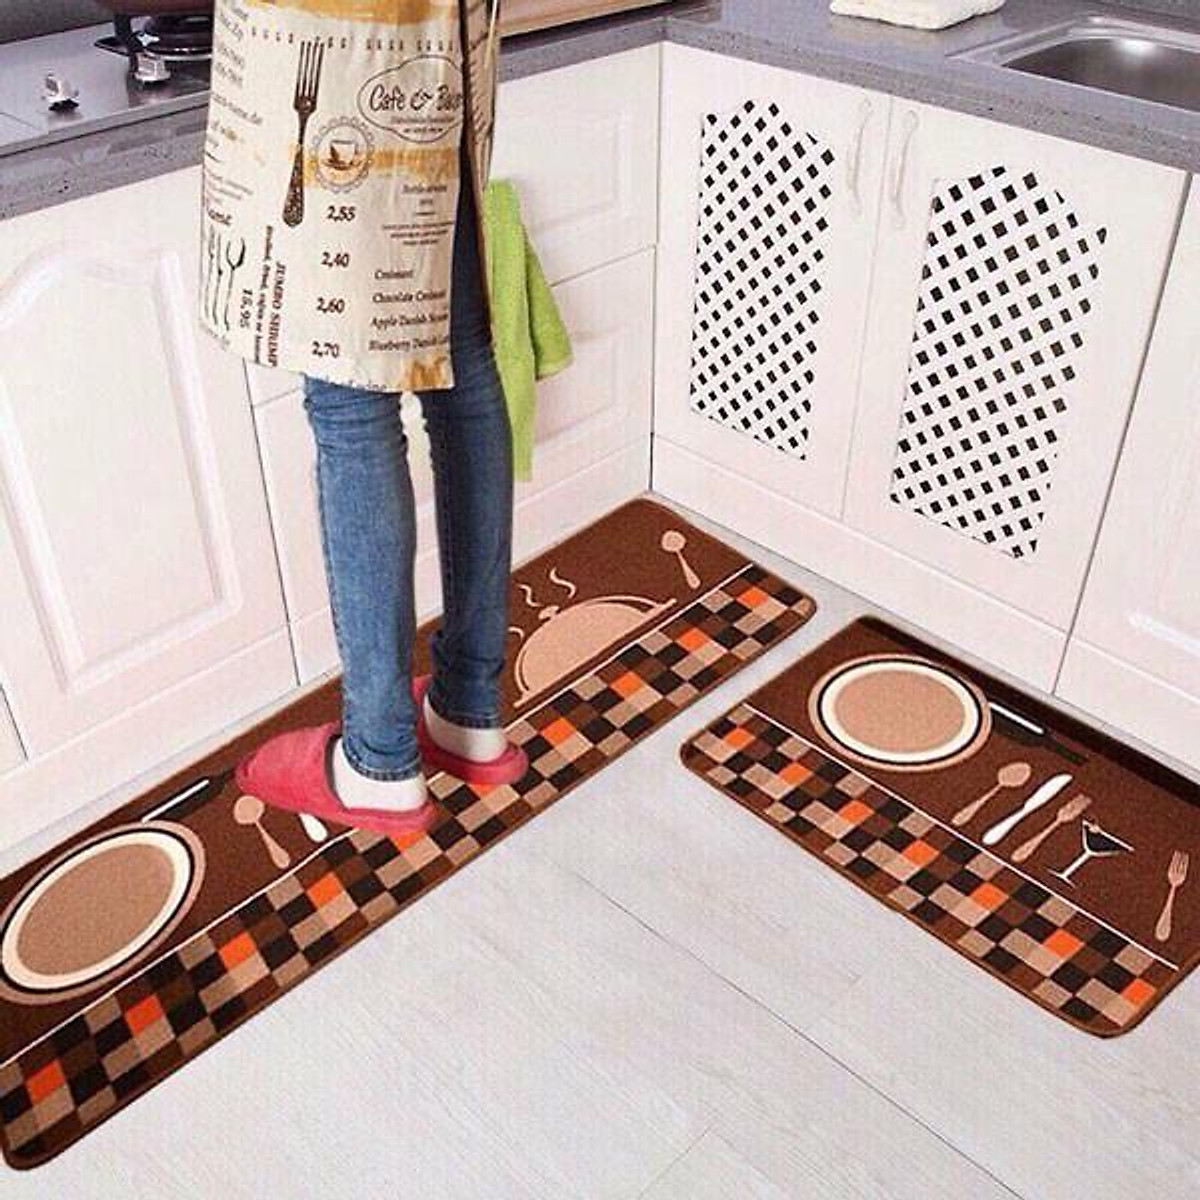 Bộ thảm bếp đẹp mắt và chất lượng cao sẽ không chỉ làm cho căn bếp của bạn trông mới mẻ hơn, mà còn giúp bảo vệ sàn nhà của bạn khỏi những vết bẩn và trầy xước.